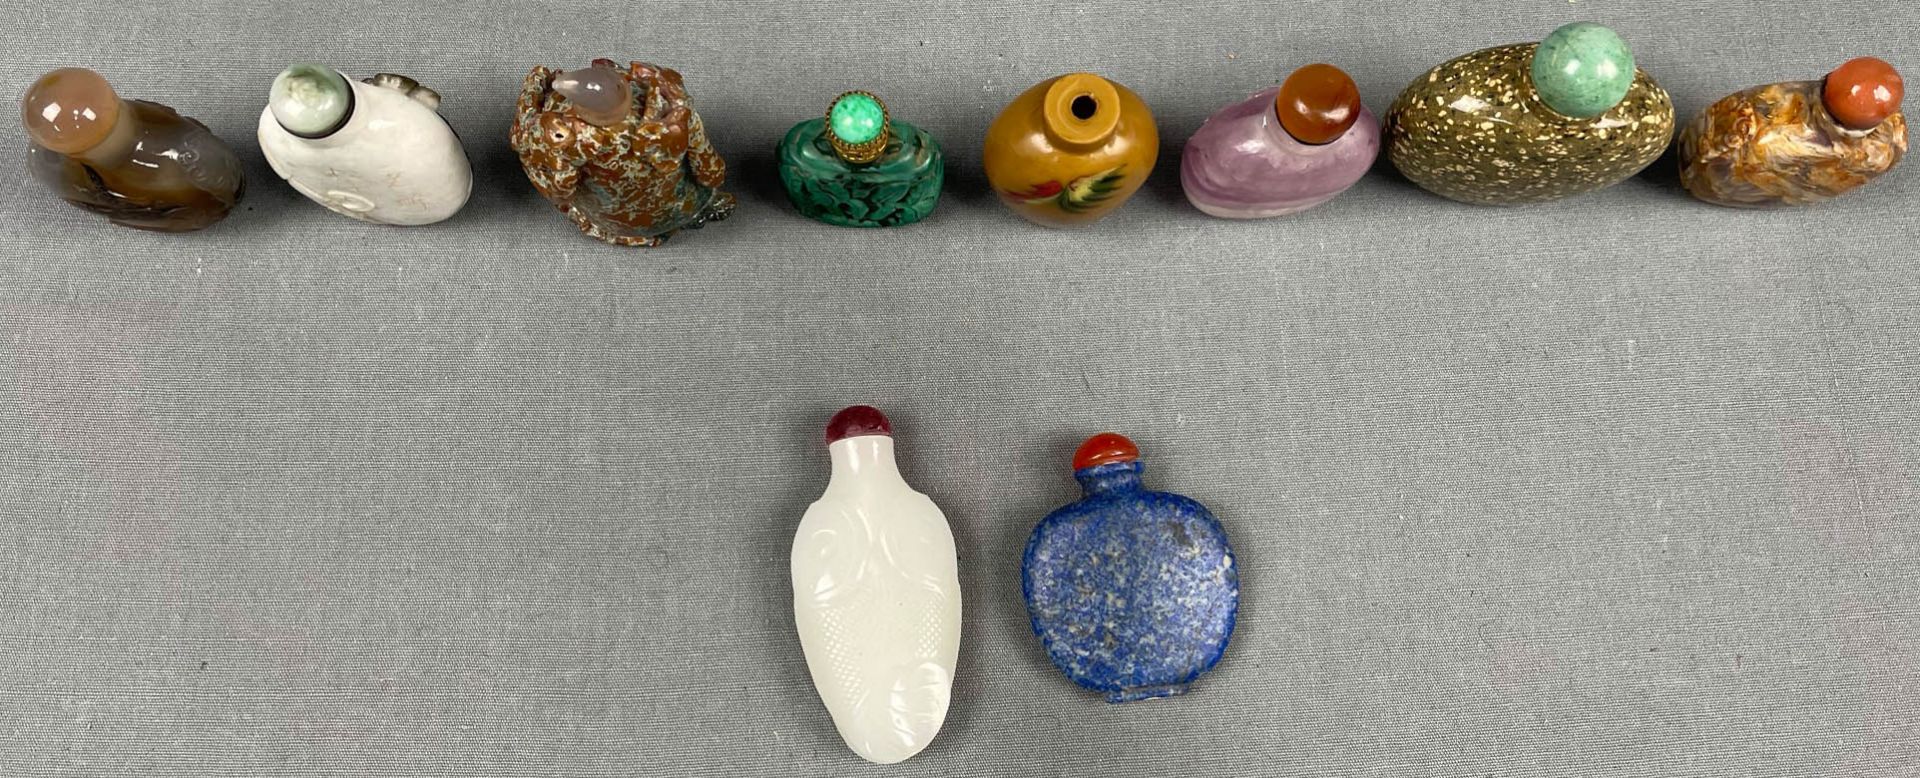 10 feine Snuff Bottles. Wohl China, Japan antik. - Image 4 of 9